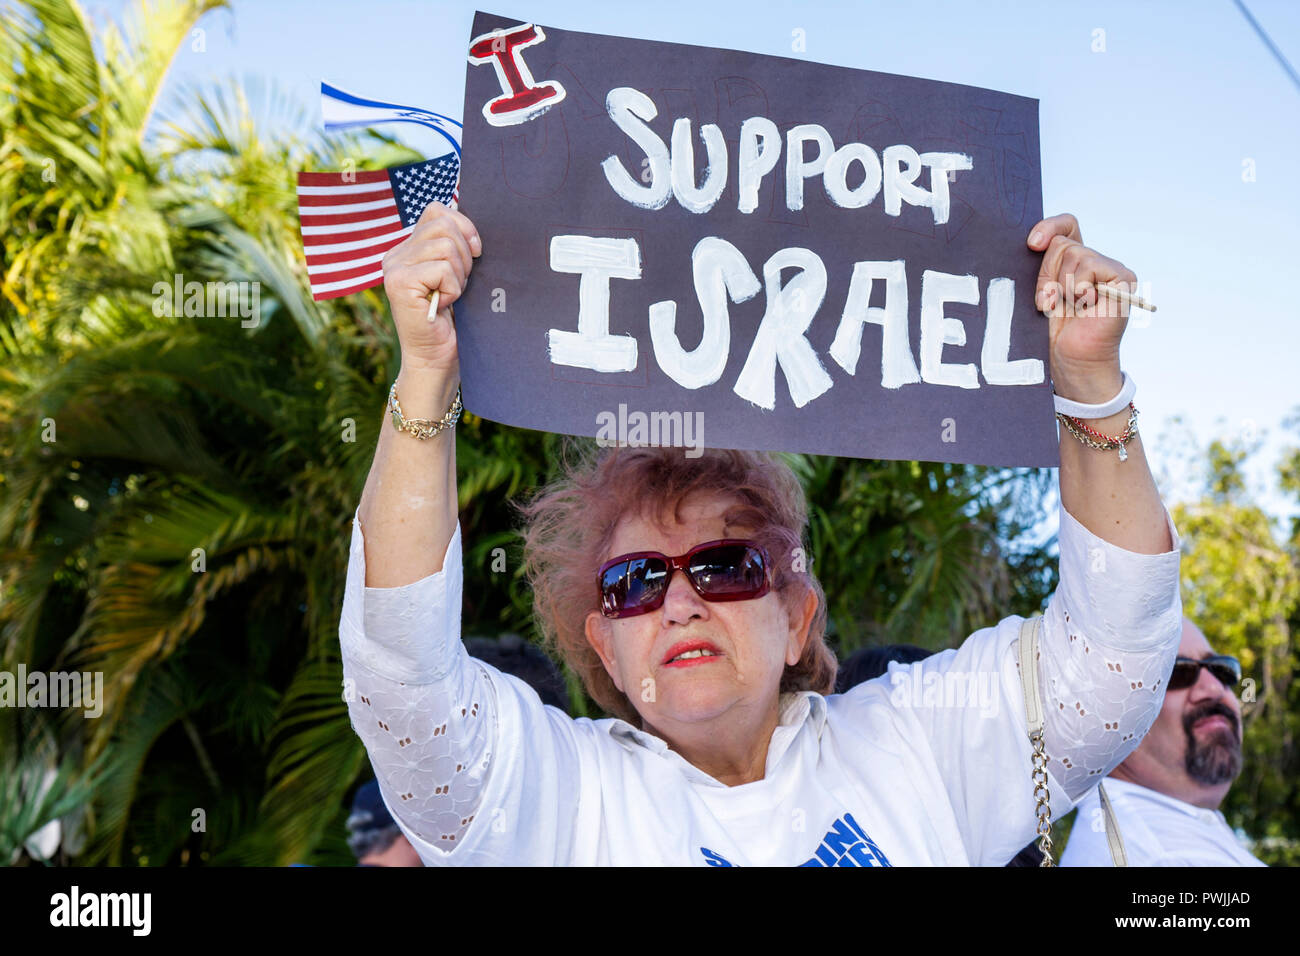 Miami Beach Florida, Memorial del Holocausto, Rally de Solidaridad con Israel, judíos, estado judío, sionismo, religión, tradición, herencia, mujeres femeninas, signo hecho en casa Foto de stock